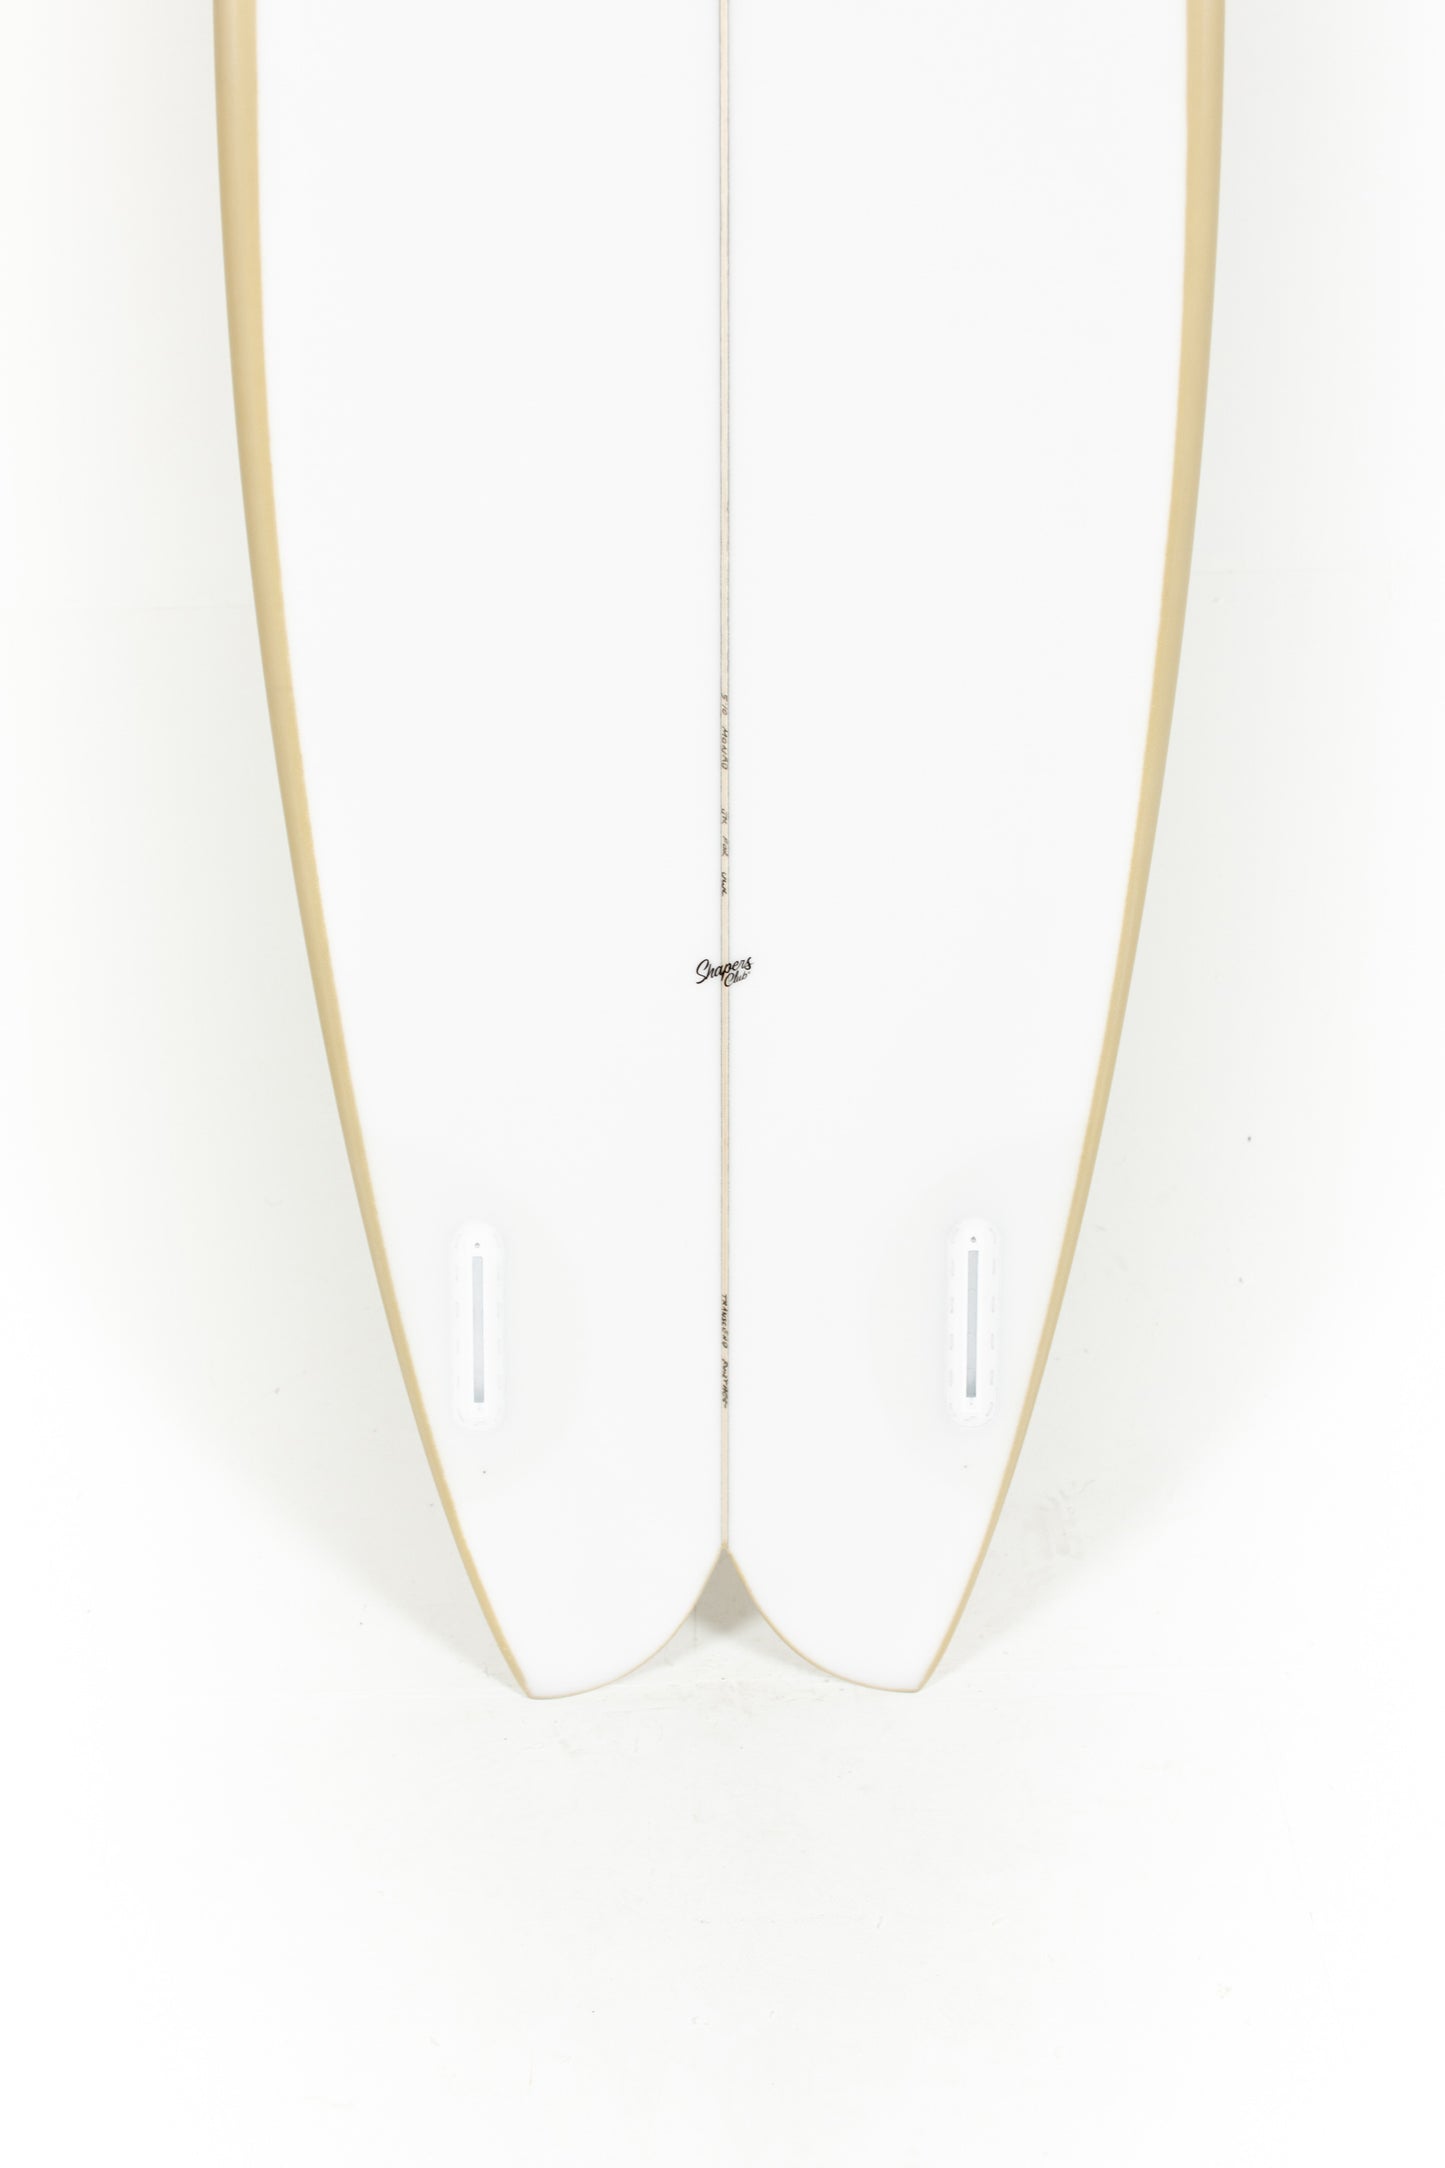 
                  
                    Pukas Surf Shop_Joshua Keogh Surfboard - MONAD by Joshua Keogh - 5'10" x 20 7/8 x 2 1/2 - MONAD510
                  
                